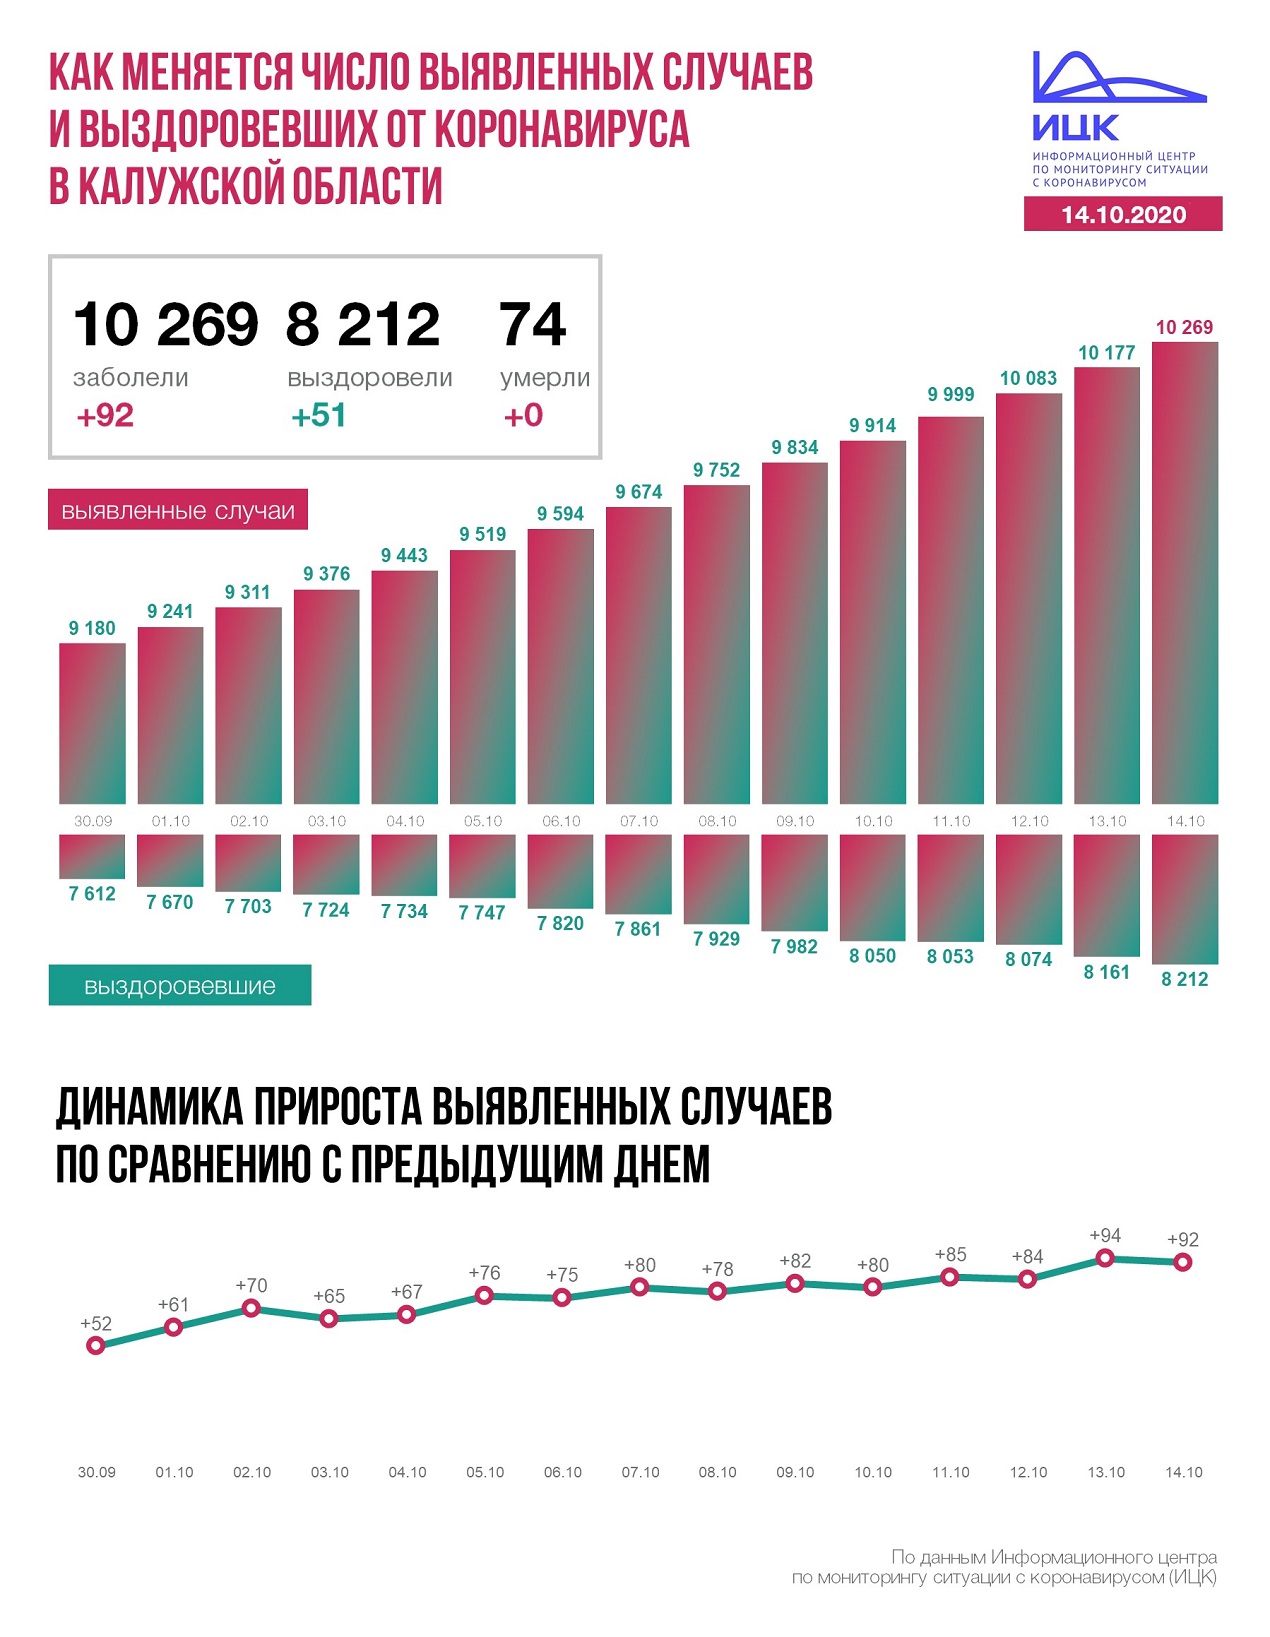 Официальная статистика по коронавирусу в Калужской области на 14 октября 2020 года.